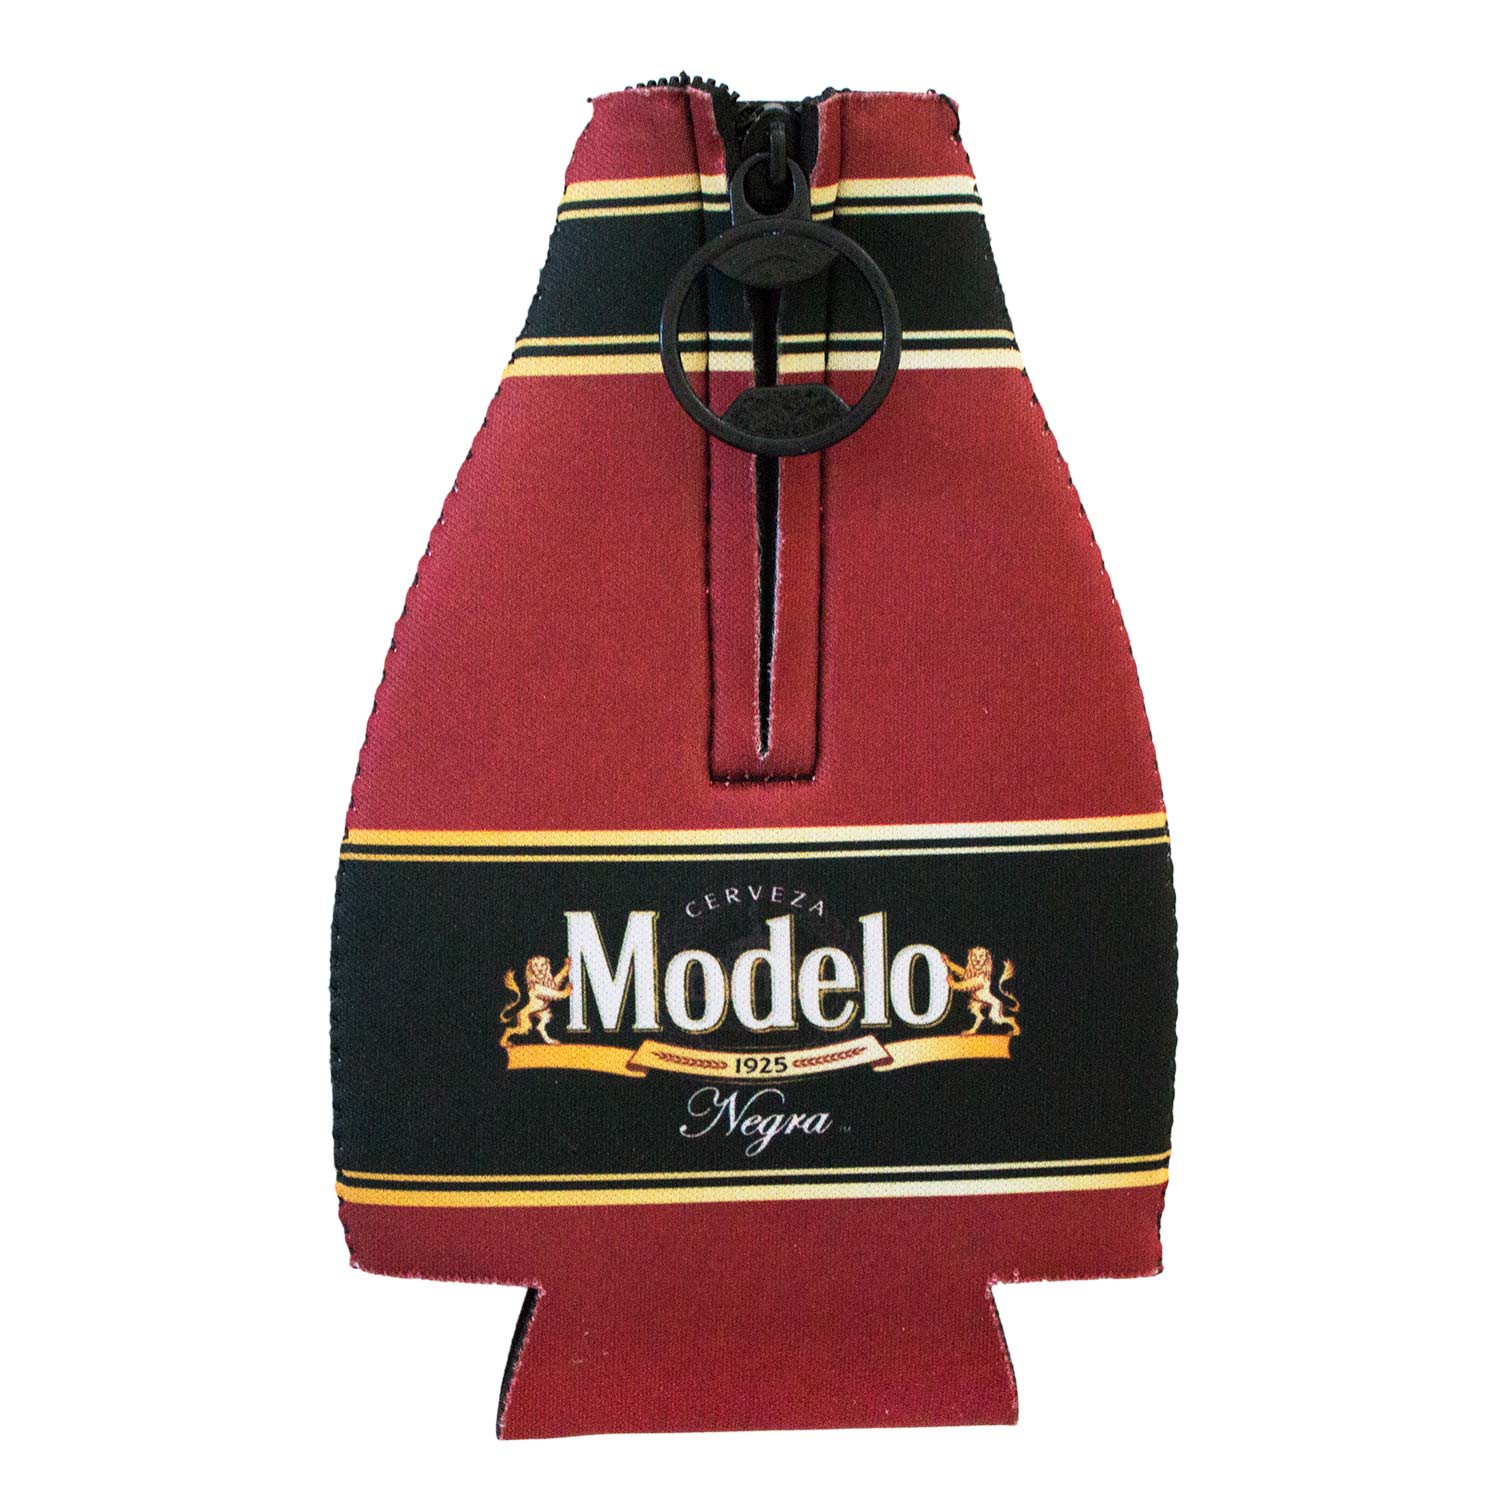 Modelo Negra Zippered Bottle Insulator